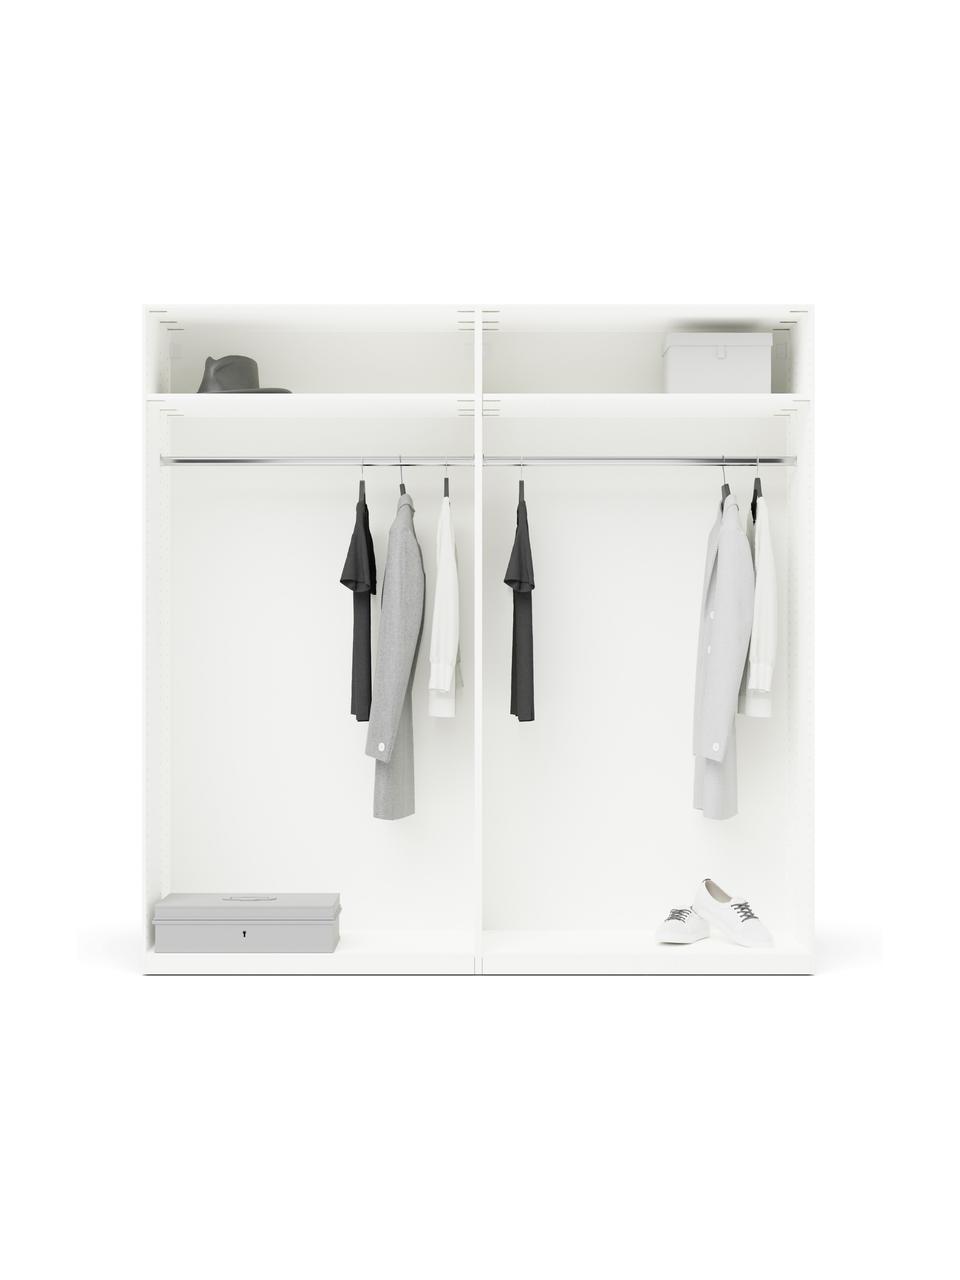 Modulaire draaideurkast Leon in wit, 200 cm breed, meerdere varianten, Frame: met melamine beklede spaa, Wit, Basis interieur, hoogte 200 cm